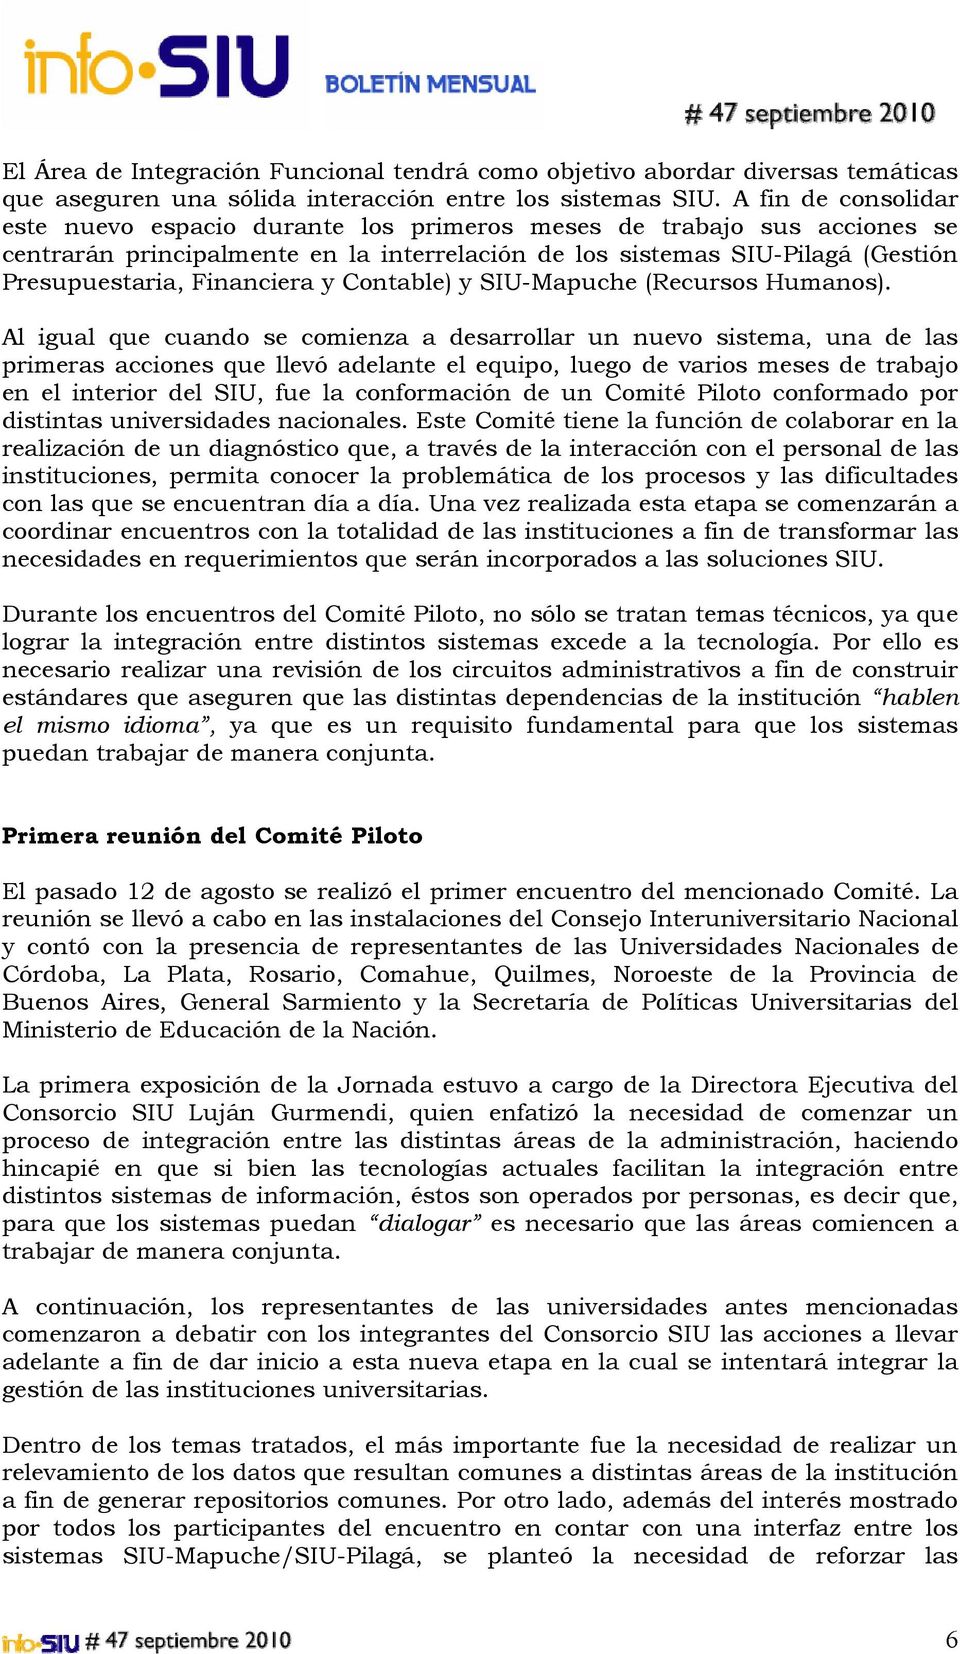 Financiera y Contable) y SIU-Mapuche (Recursos Humanos).